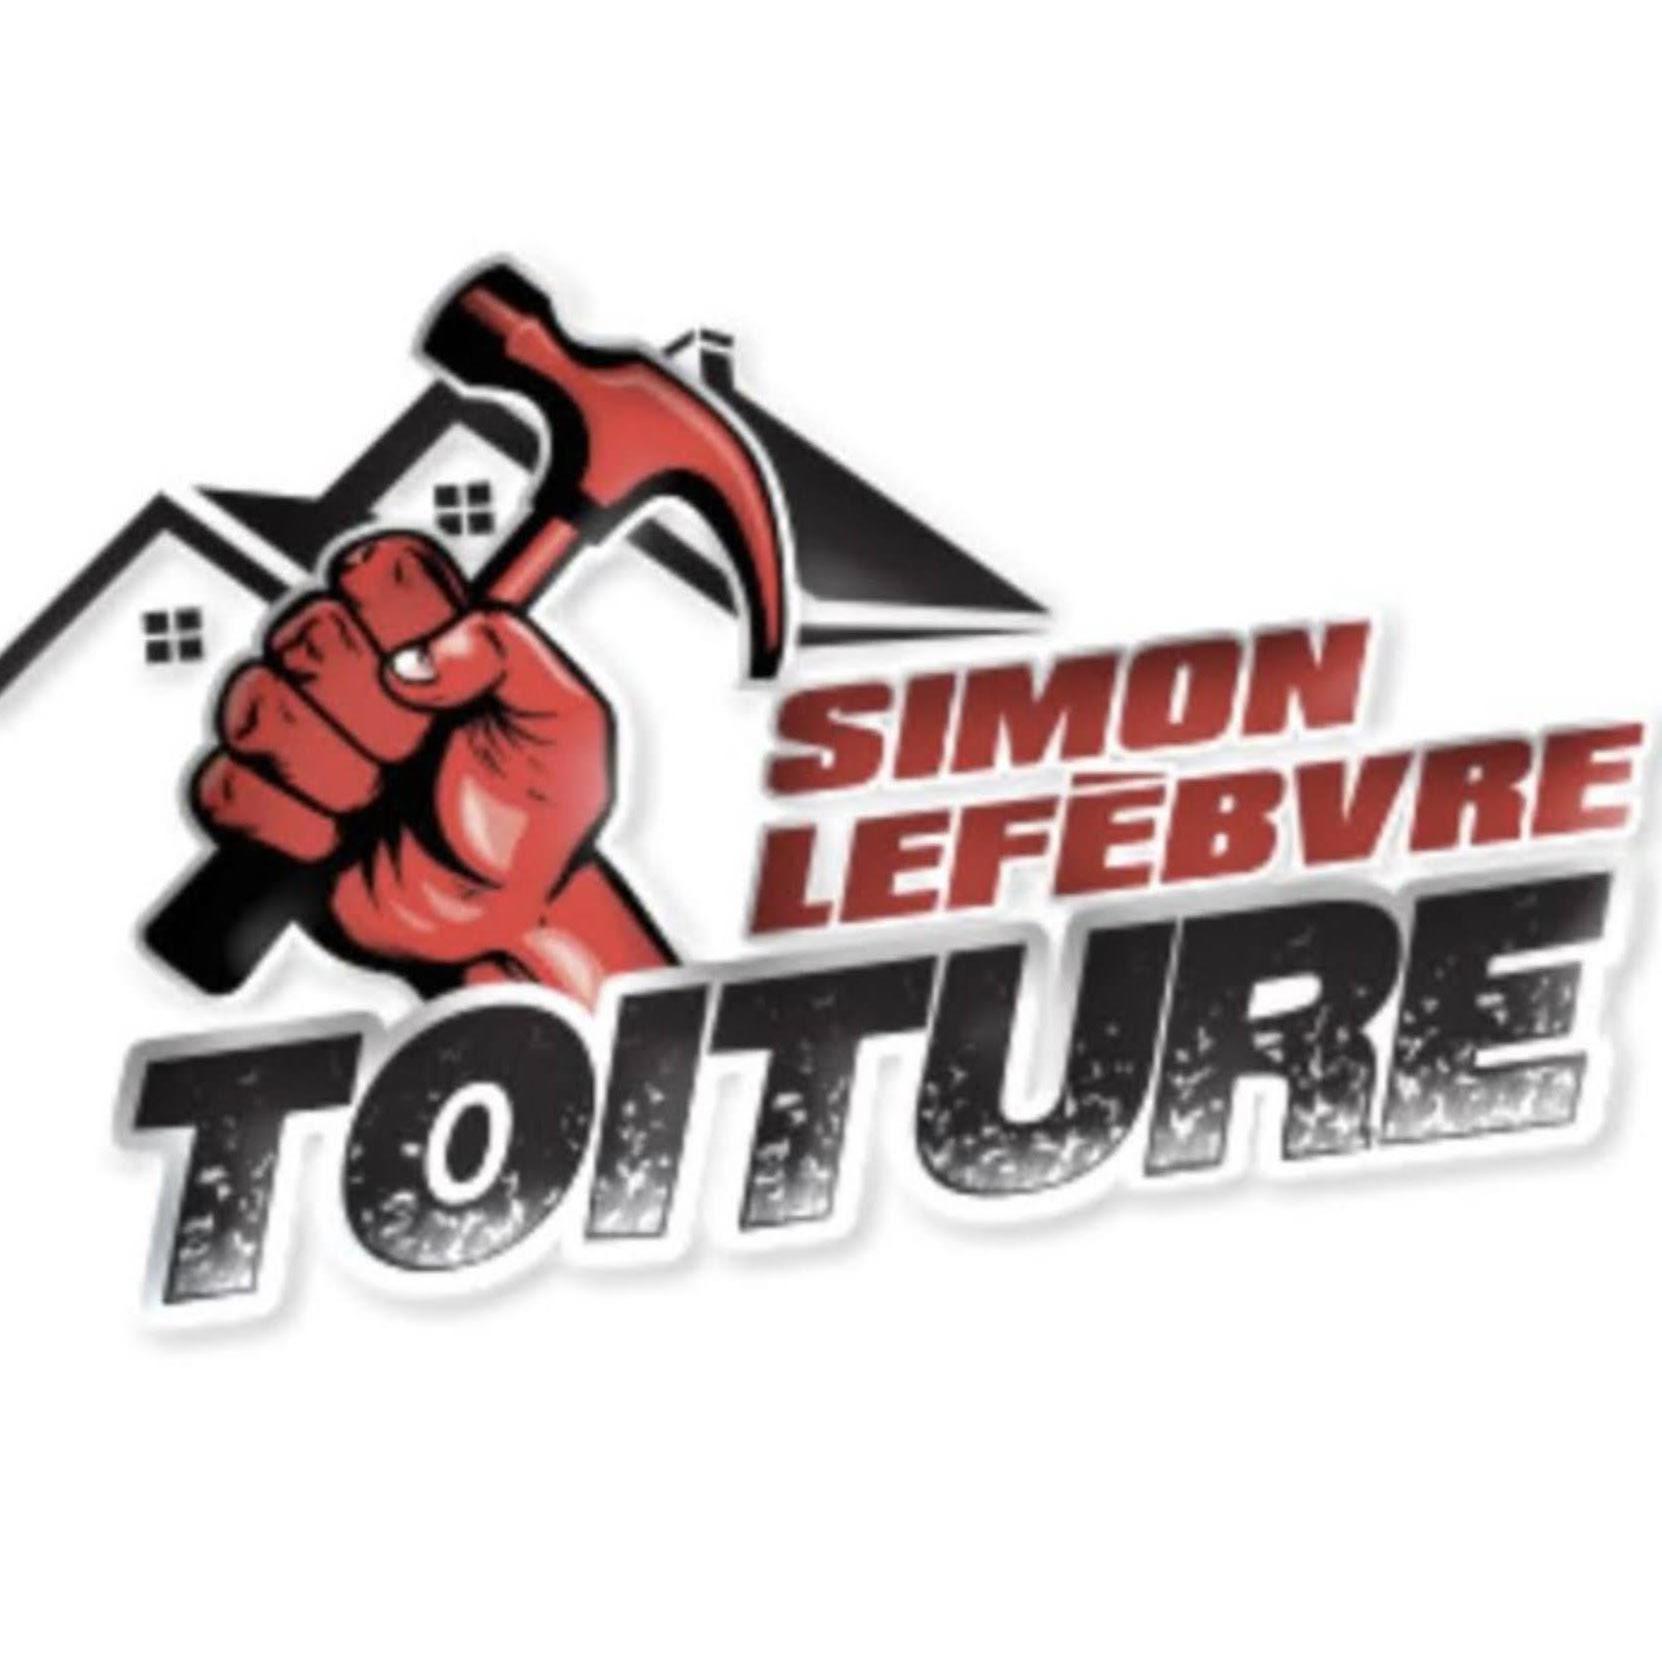 Simon Lefèbvre Toiture et Rénovation - Sainte-Agathe - Sainte-Anne-des-Lacs, QC J0R 1B0 - (819)323-7540 | ShowMeLocal.com